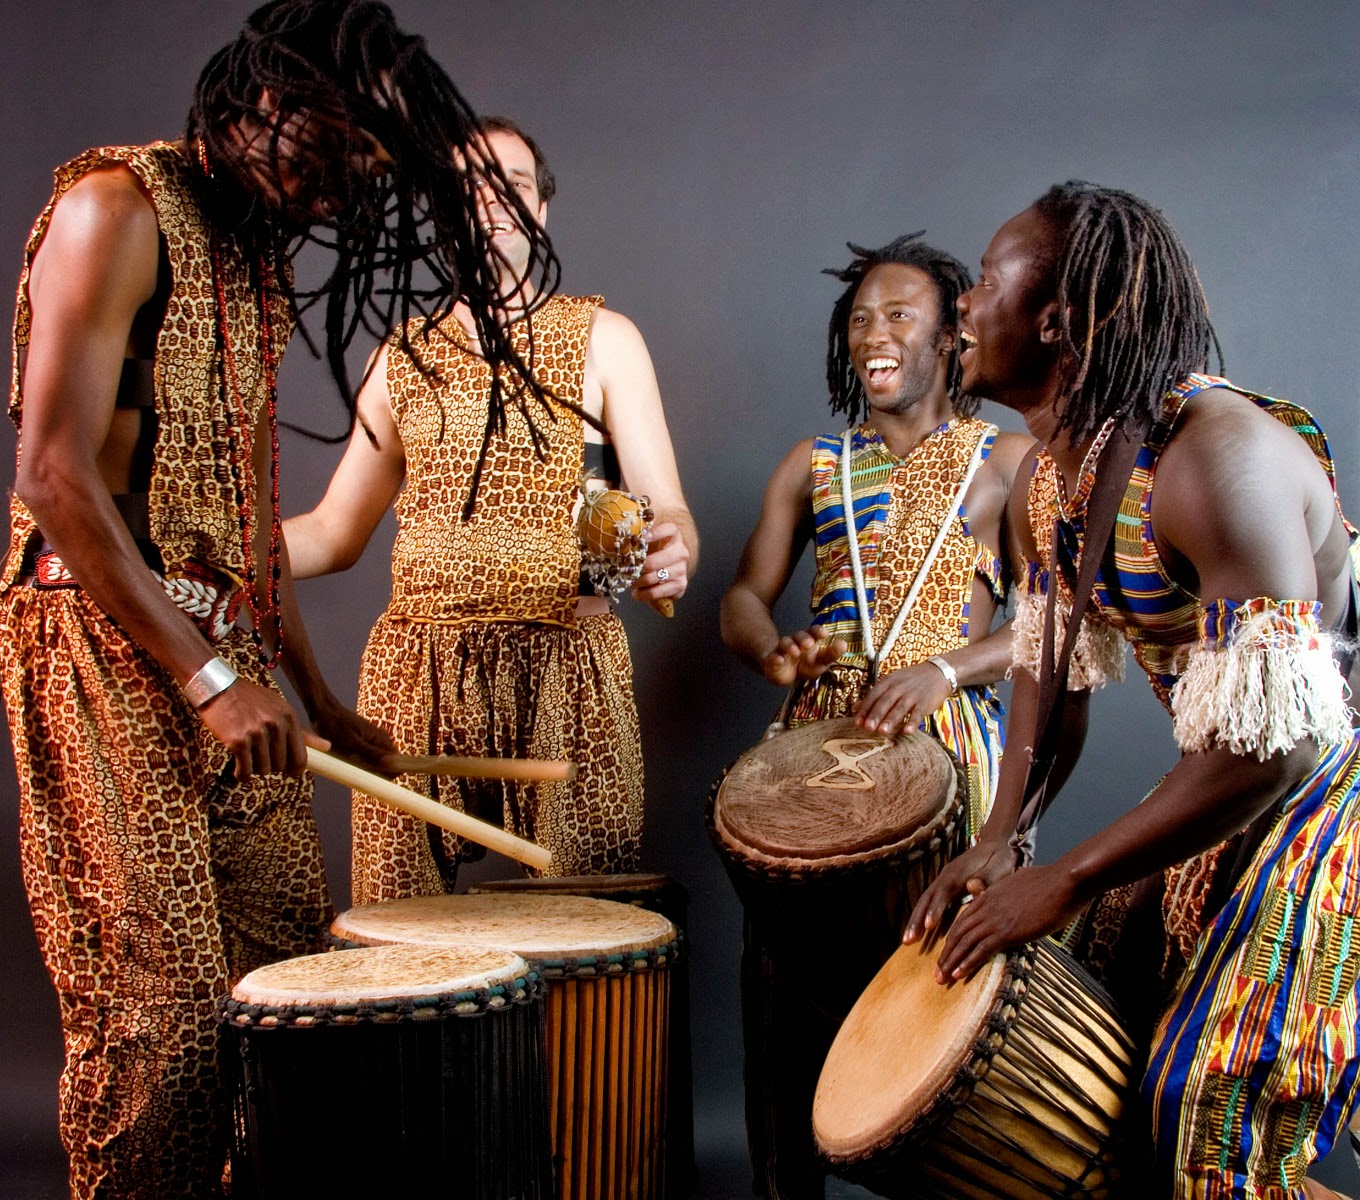 Ethnic music best deep. Африканские музыканты. Музыканты африканцы. Музыкальная культура Африки. Традиционный музыкальный инструмент Африки.